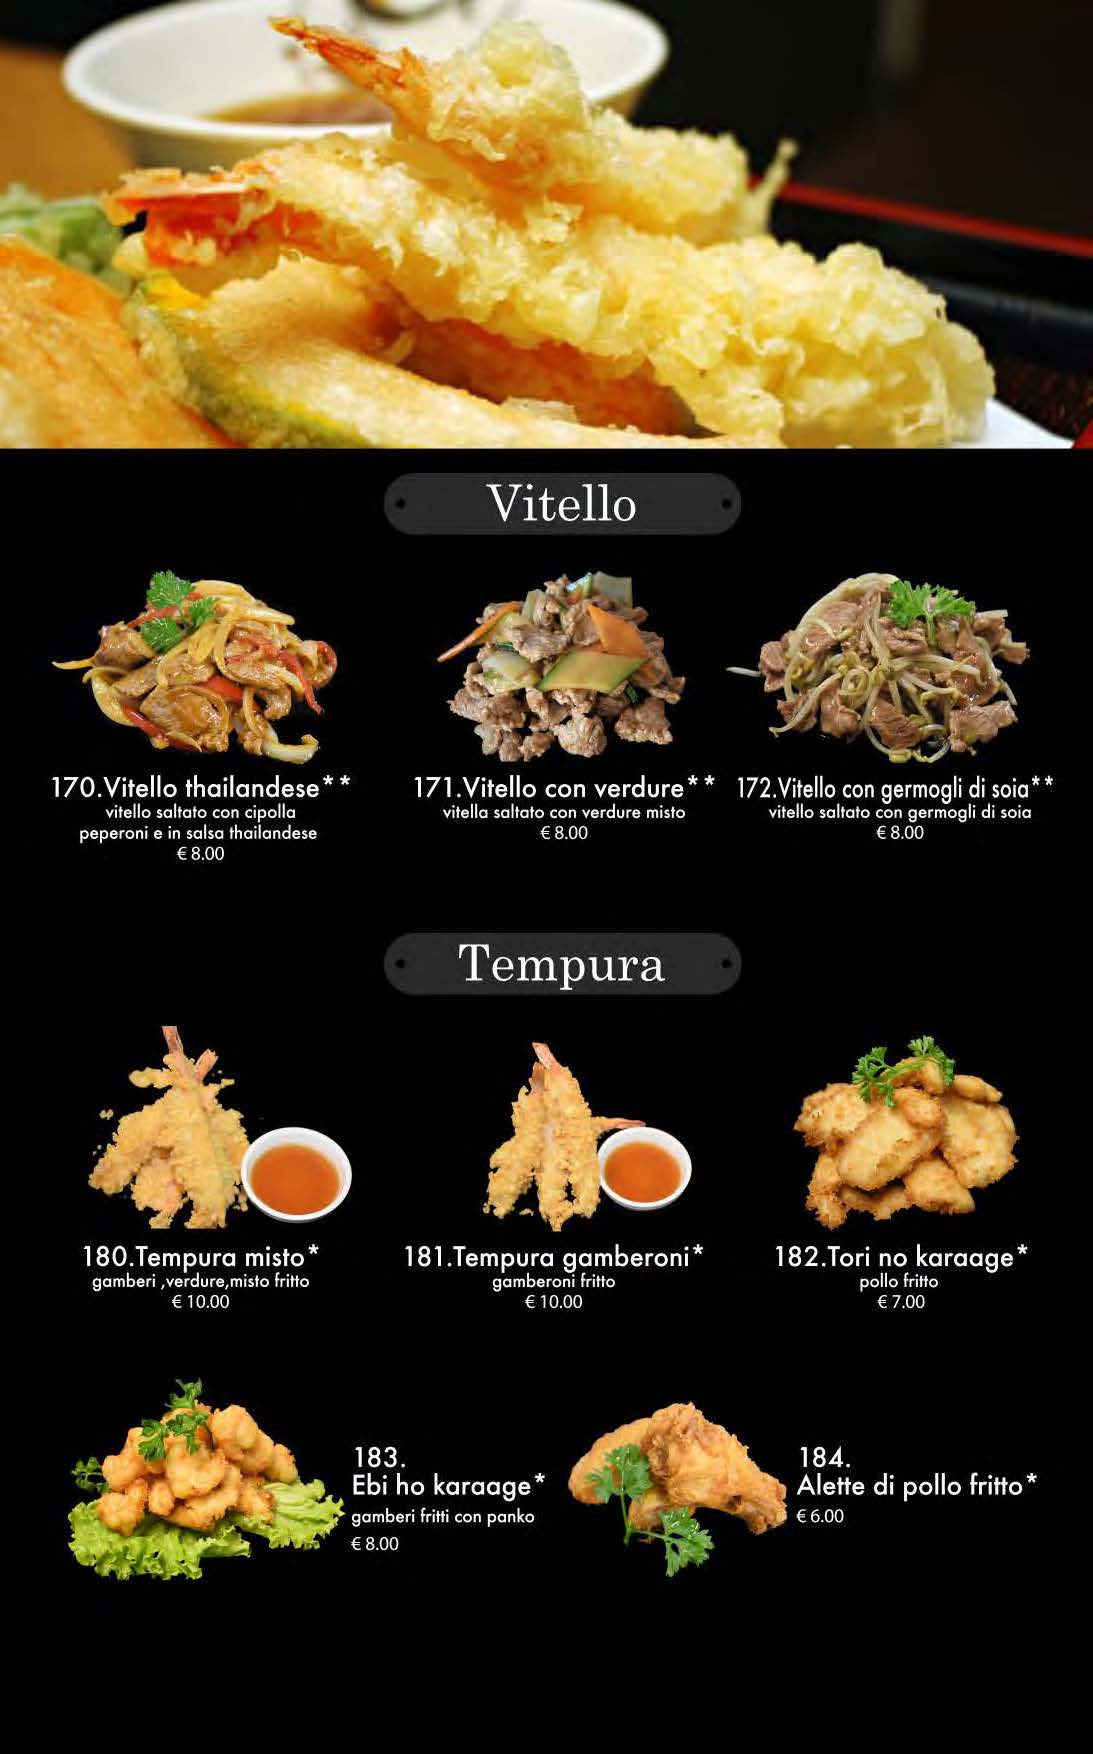 attimi ristorante giapponese padova menù cena pagina 17 vitello tempura